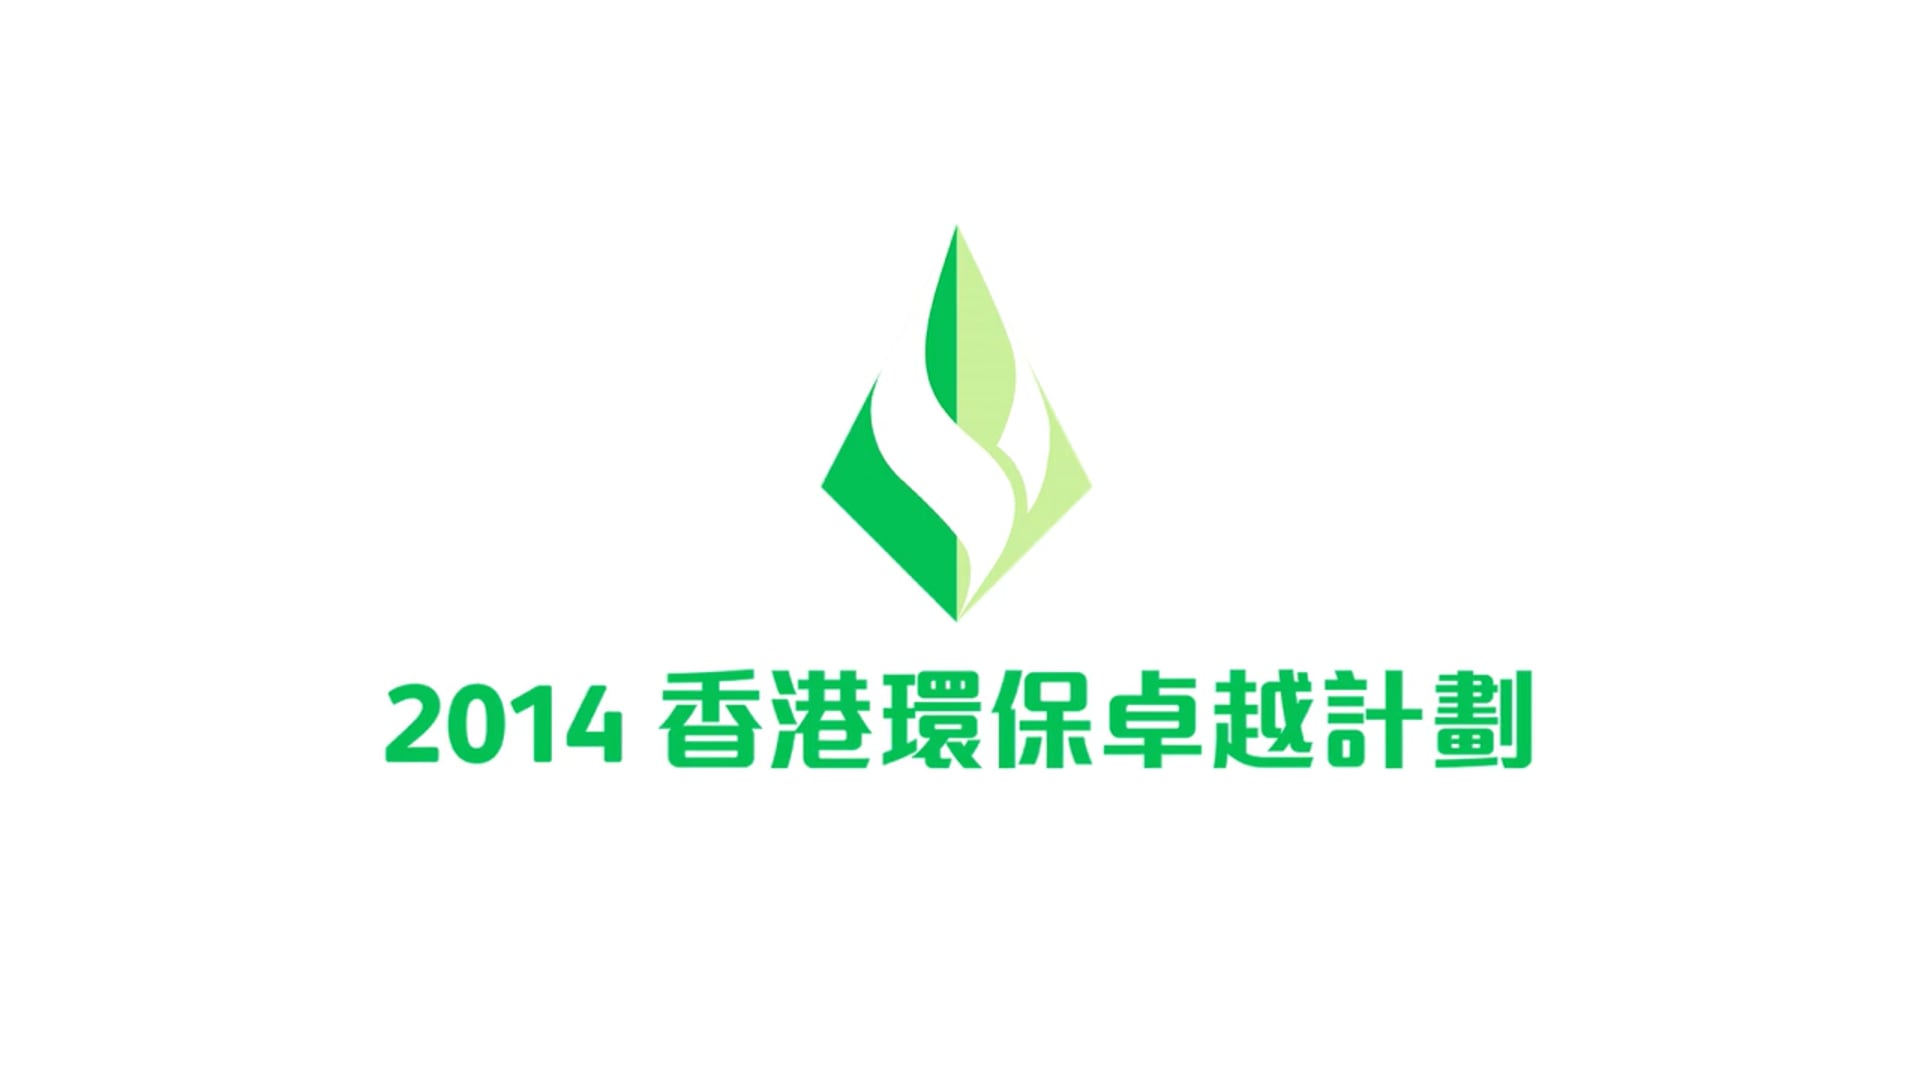 2014 香港環保卓越計劃 TVC